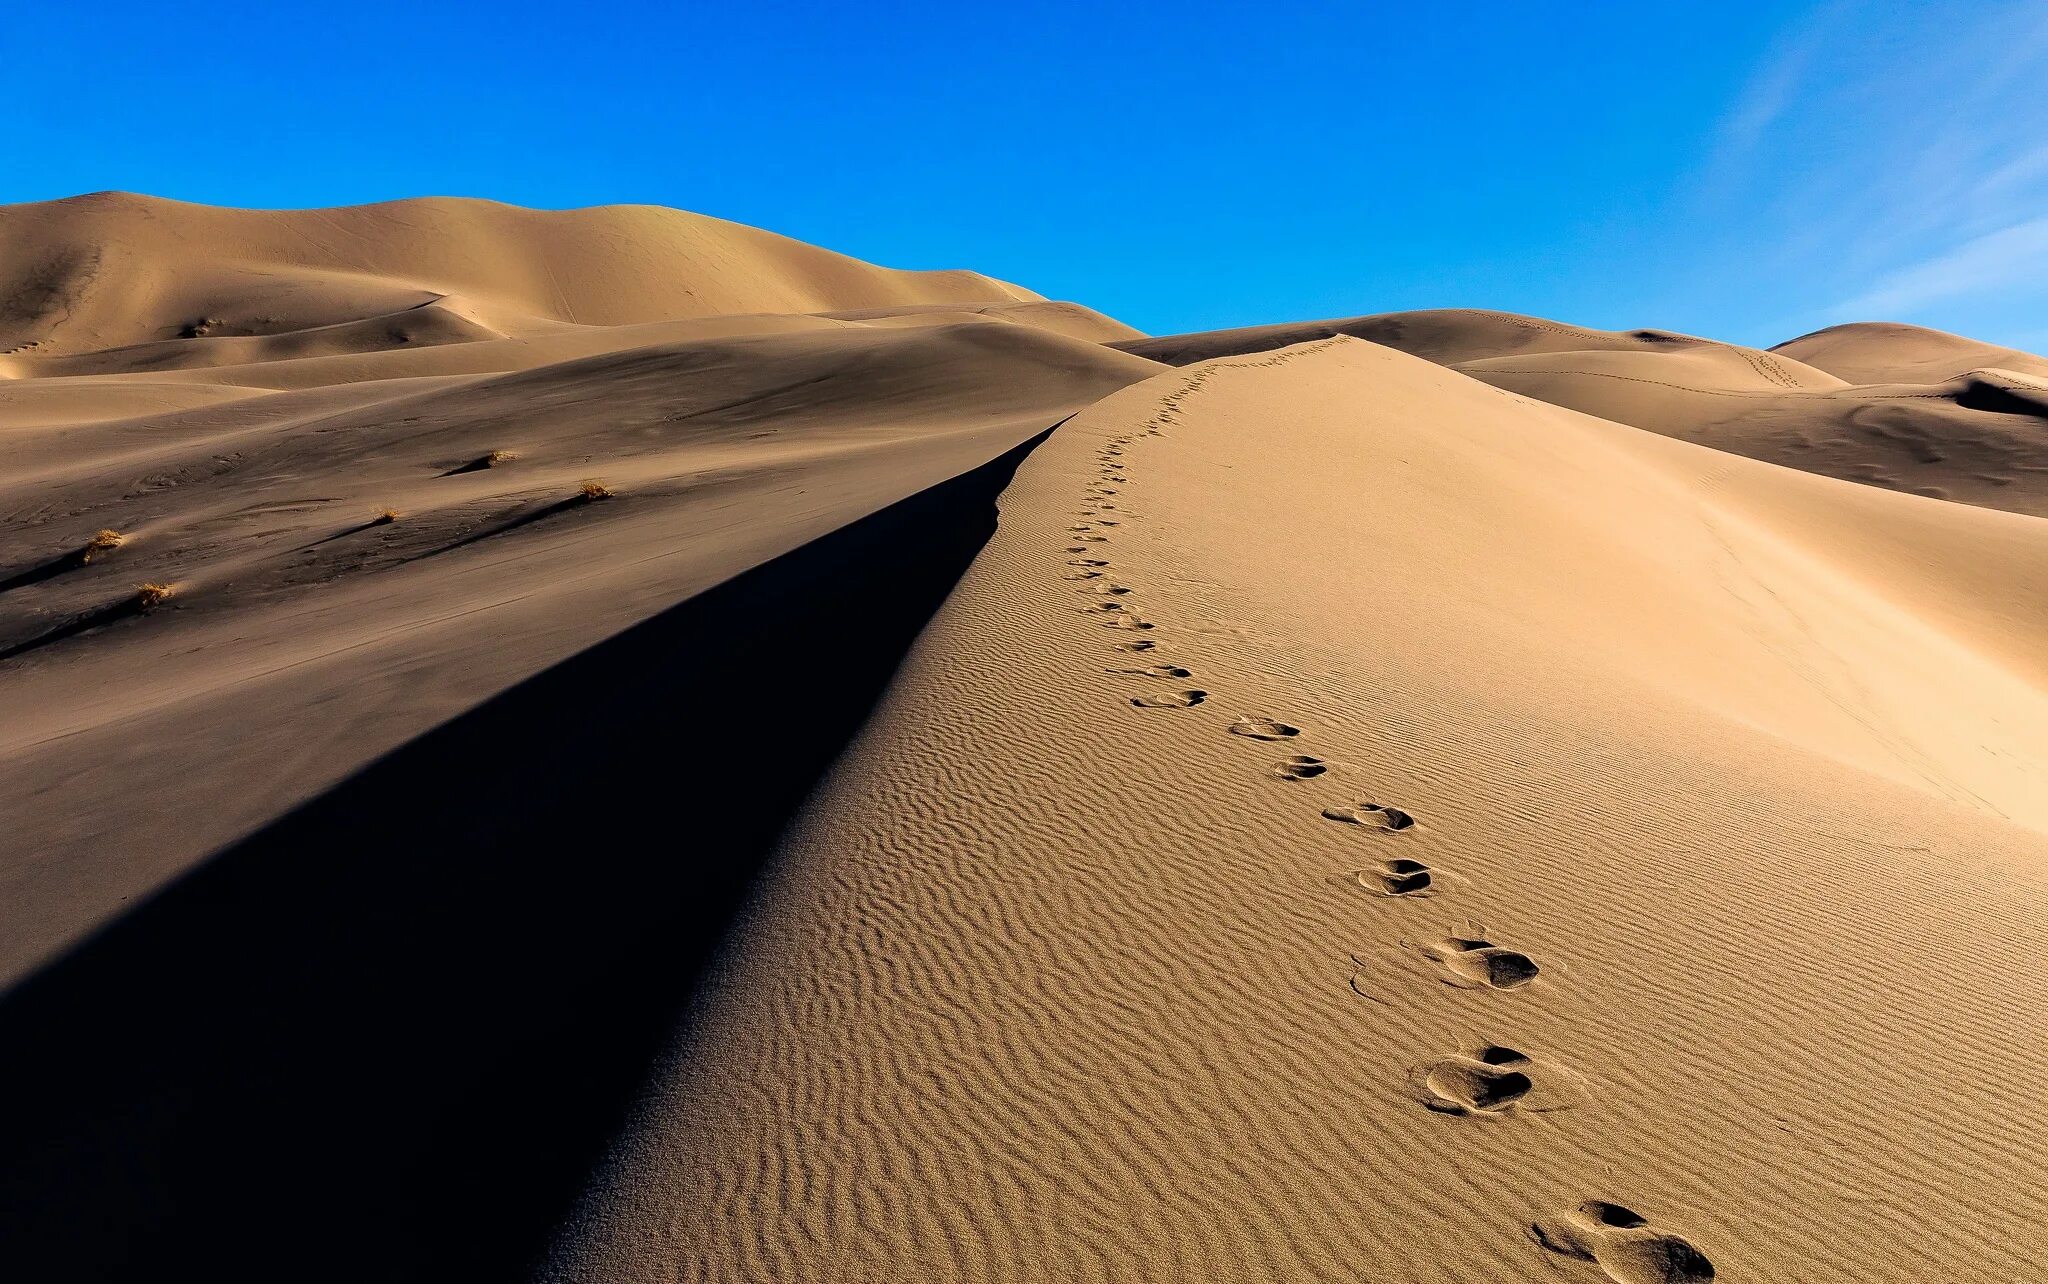 Эль ХАМРА пустыня. Бархан Сарыкум. Барханы в пустыне. Следы на песке в пустыне.